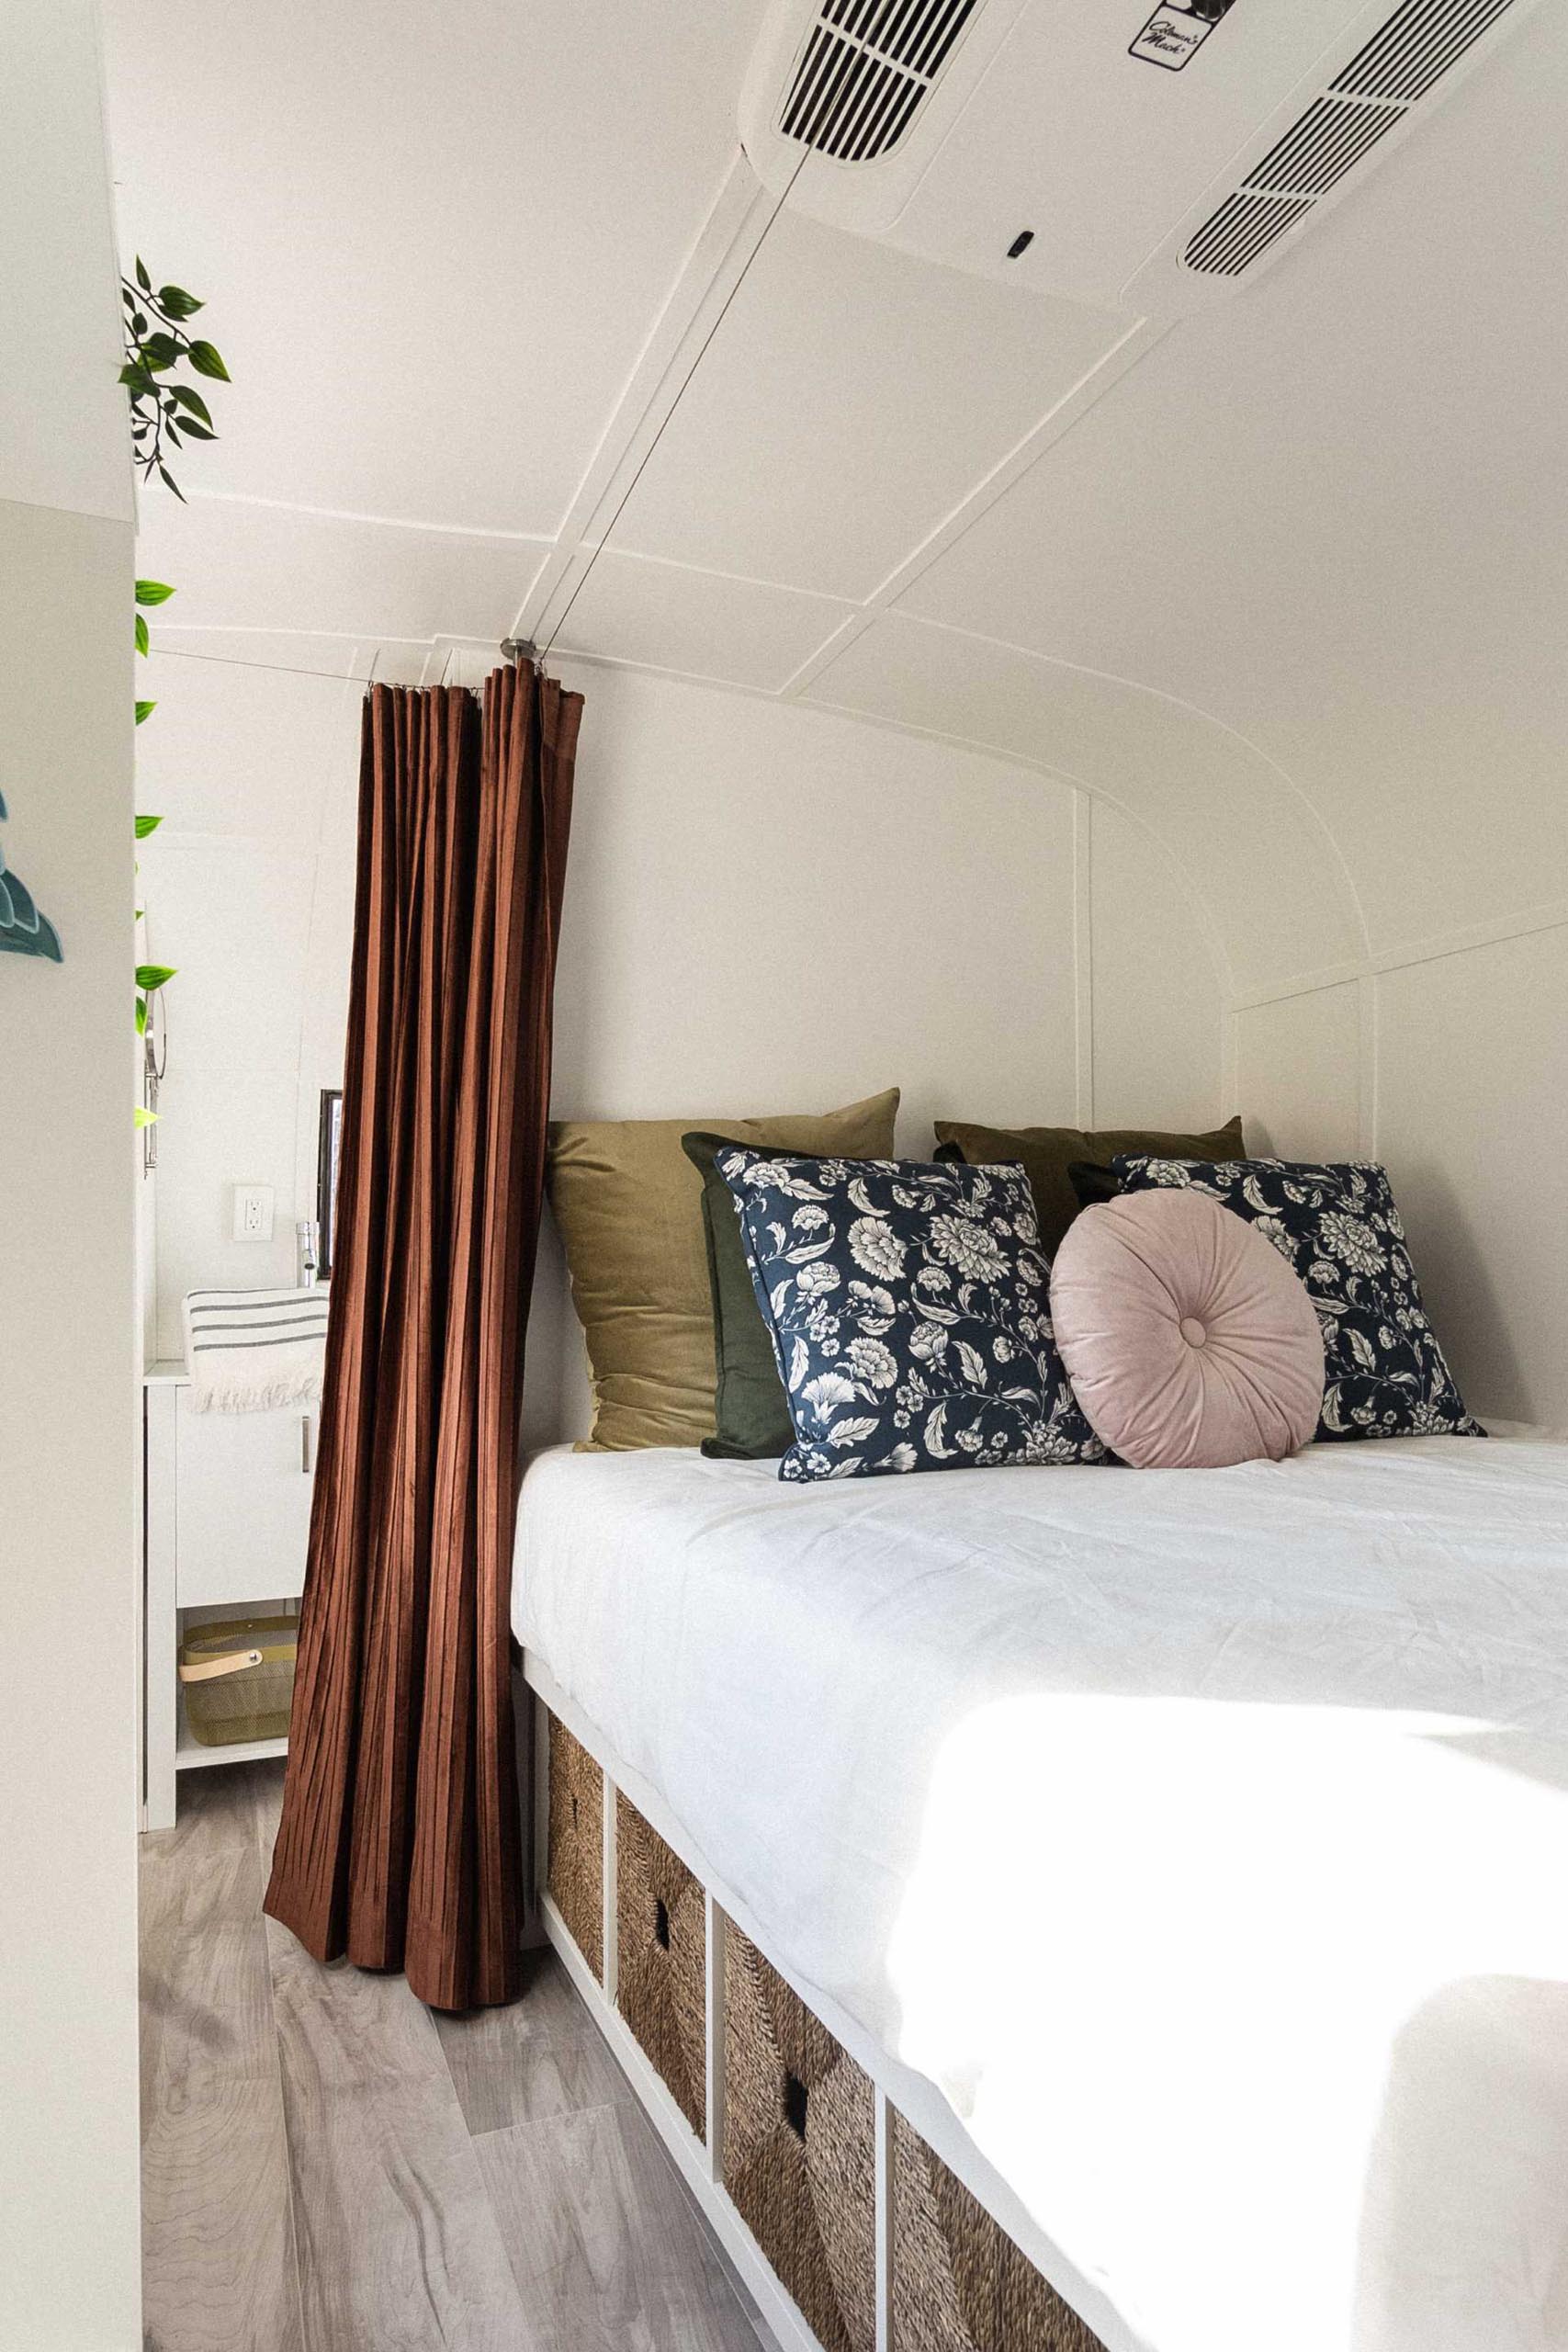 The modern bedroom of a remodeled vintage travel trailer.